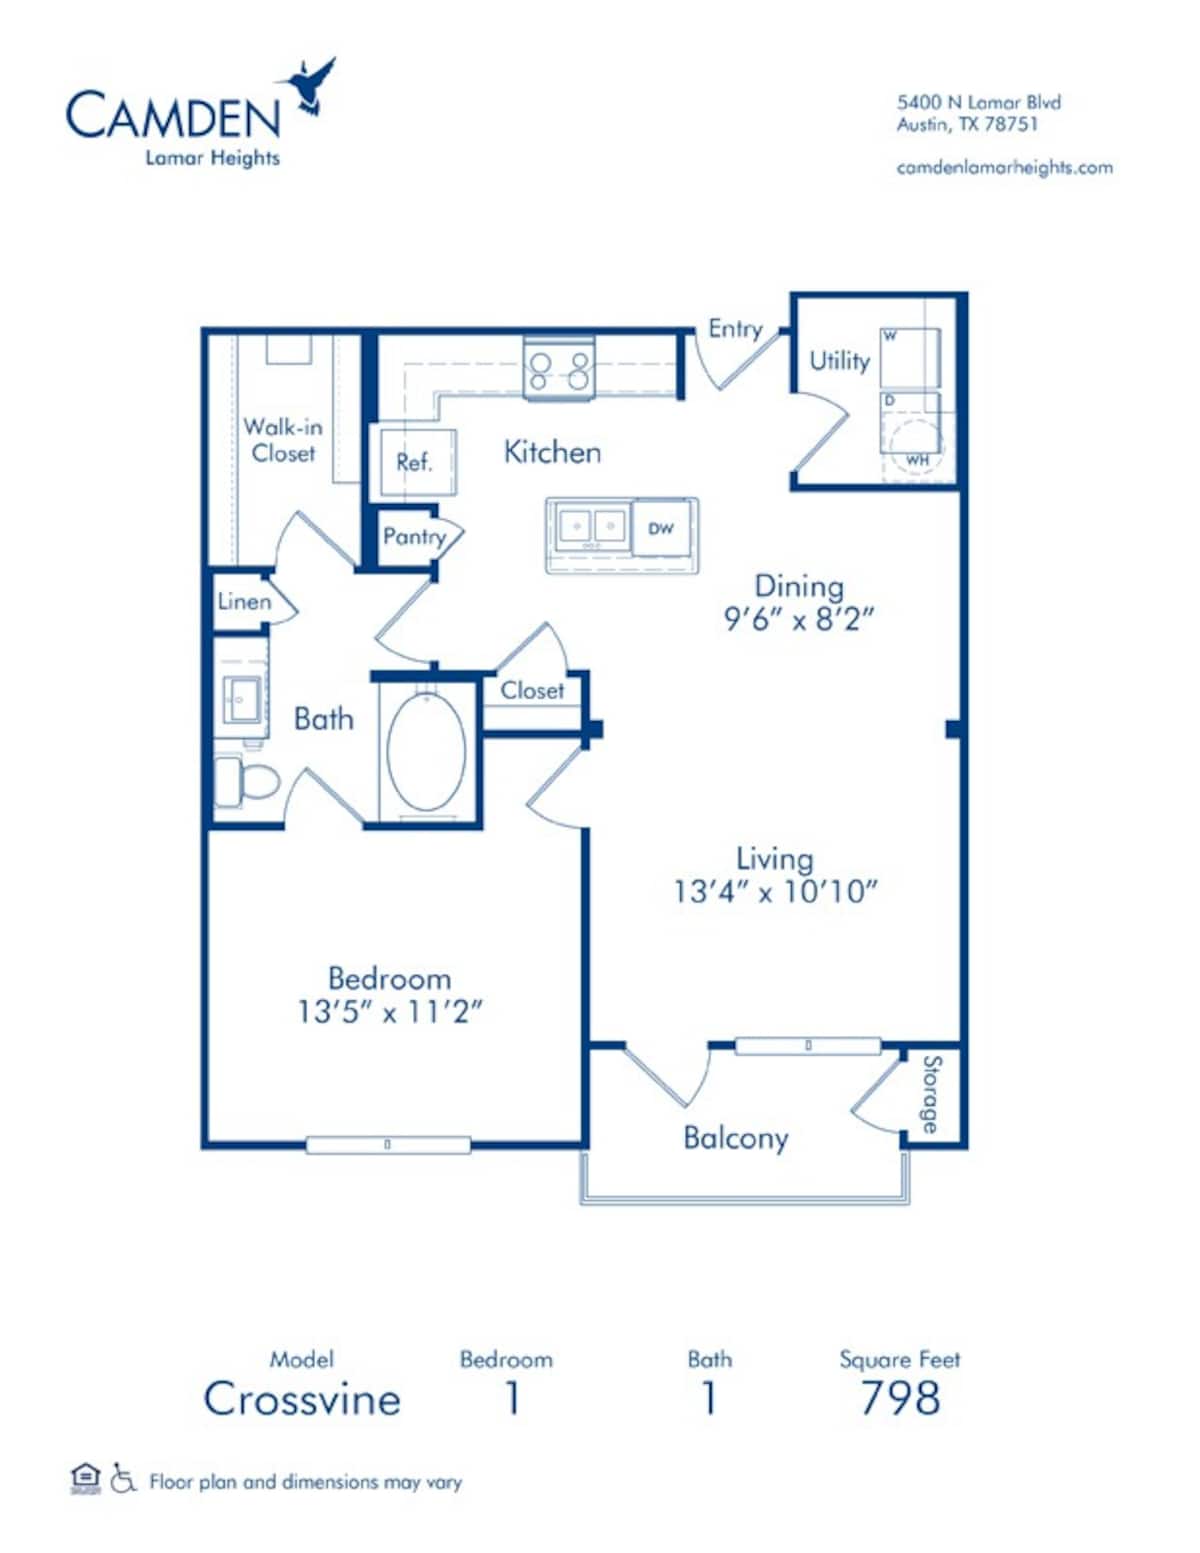 Floorplan diagram for Crossvine, showing 1 bedroom